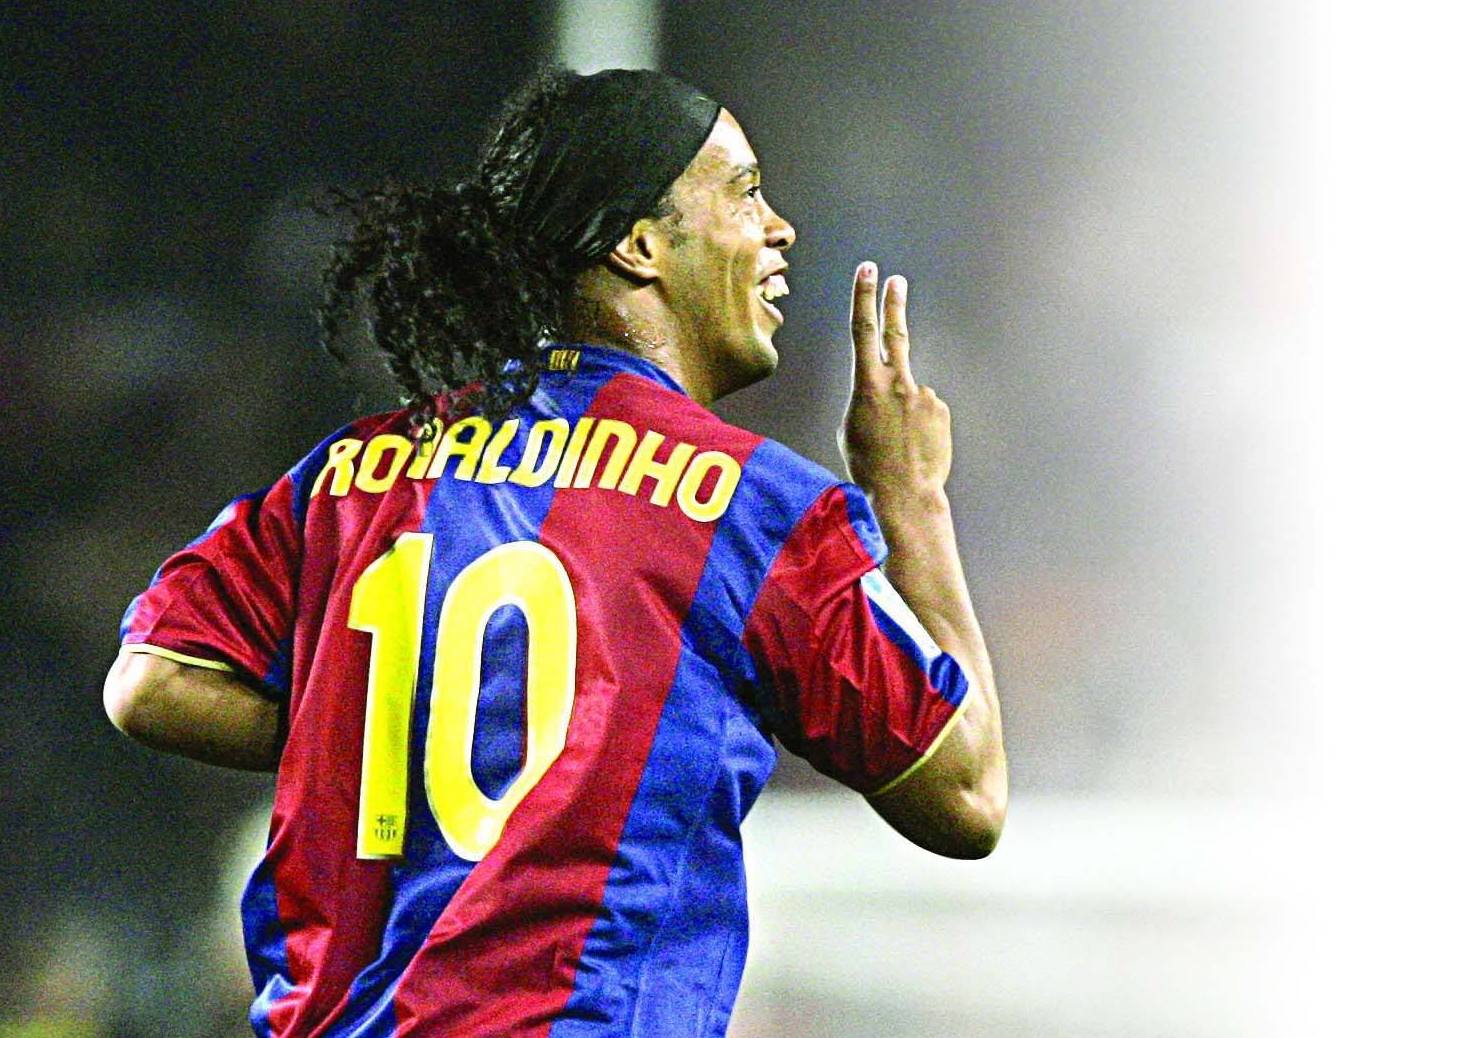     Ronaldinho attendu en Guadeloupe en avril

